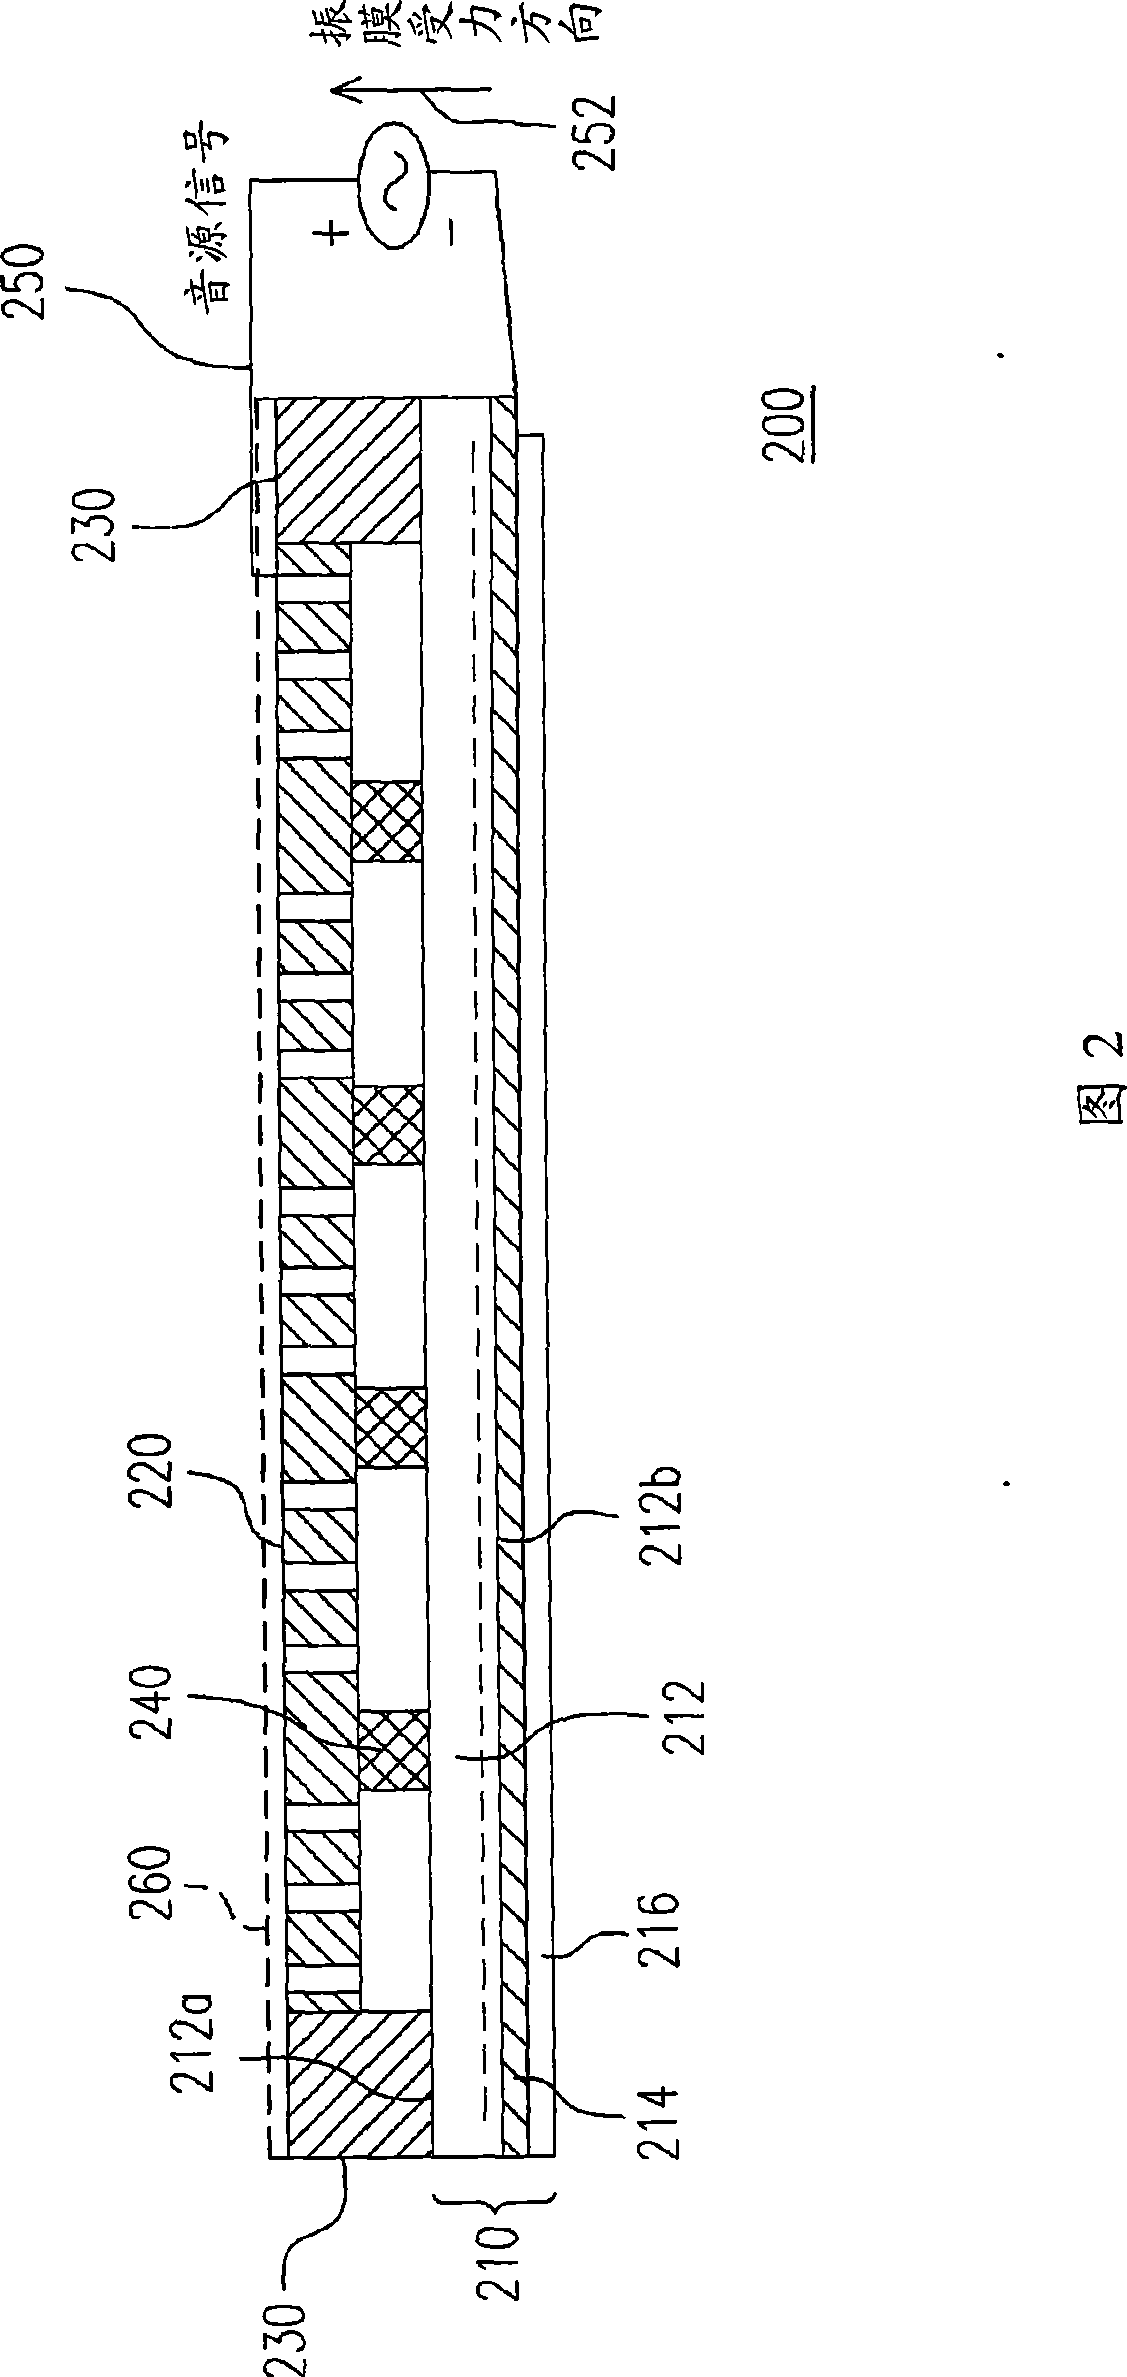 Single body construction for loudspeaker